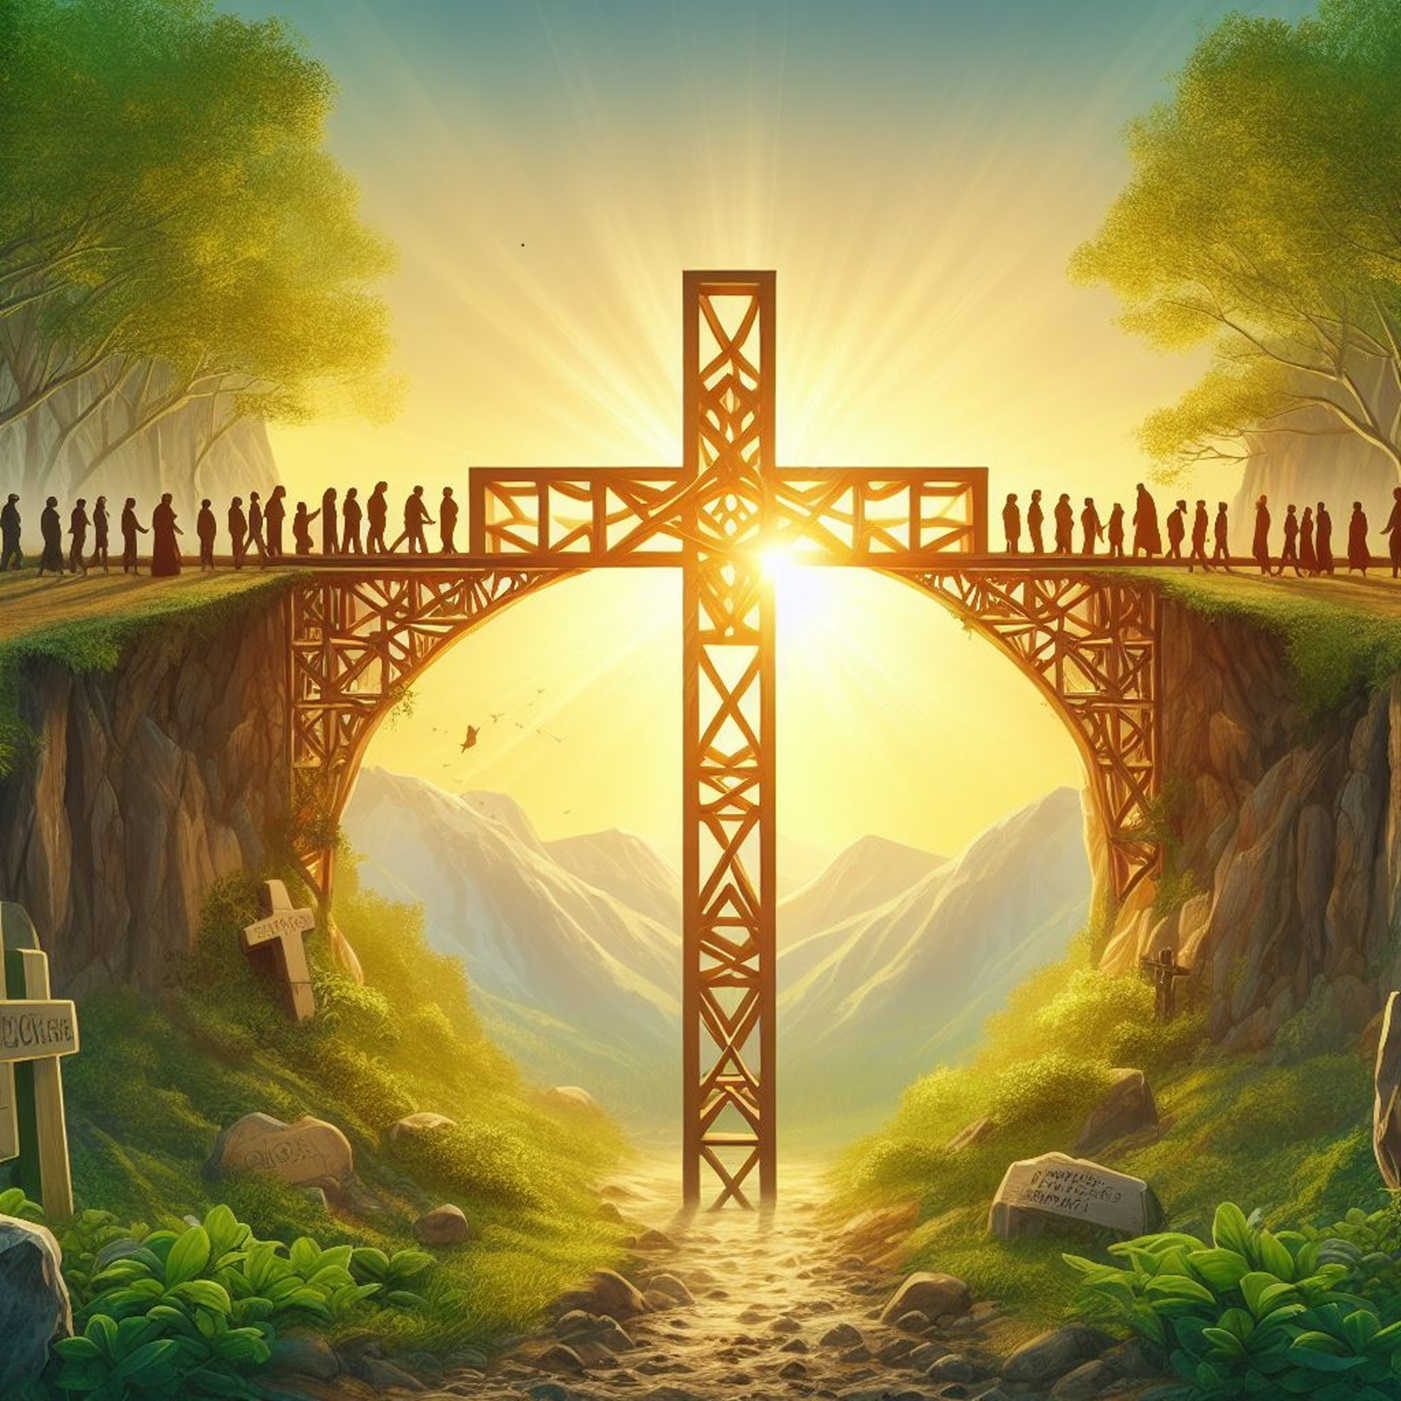 69 – Brücken des Glaubens bauen: Liebe und Verständnis in Zeiten des Zweifels